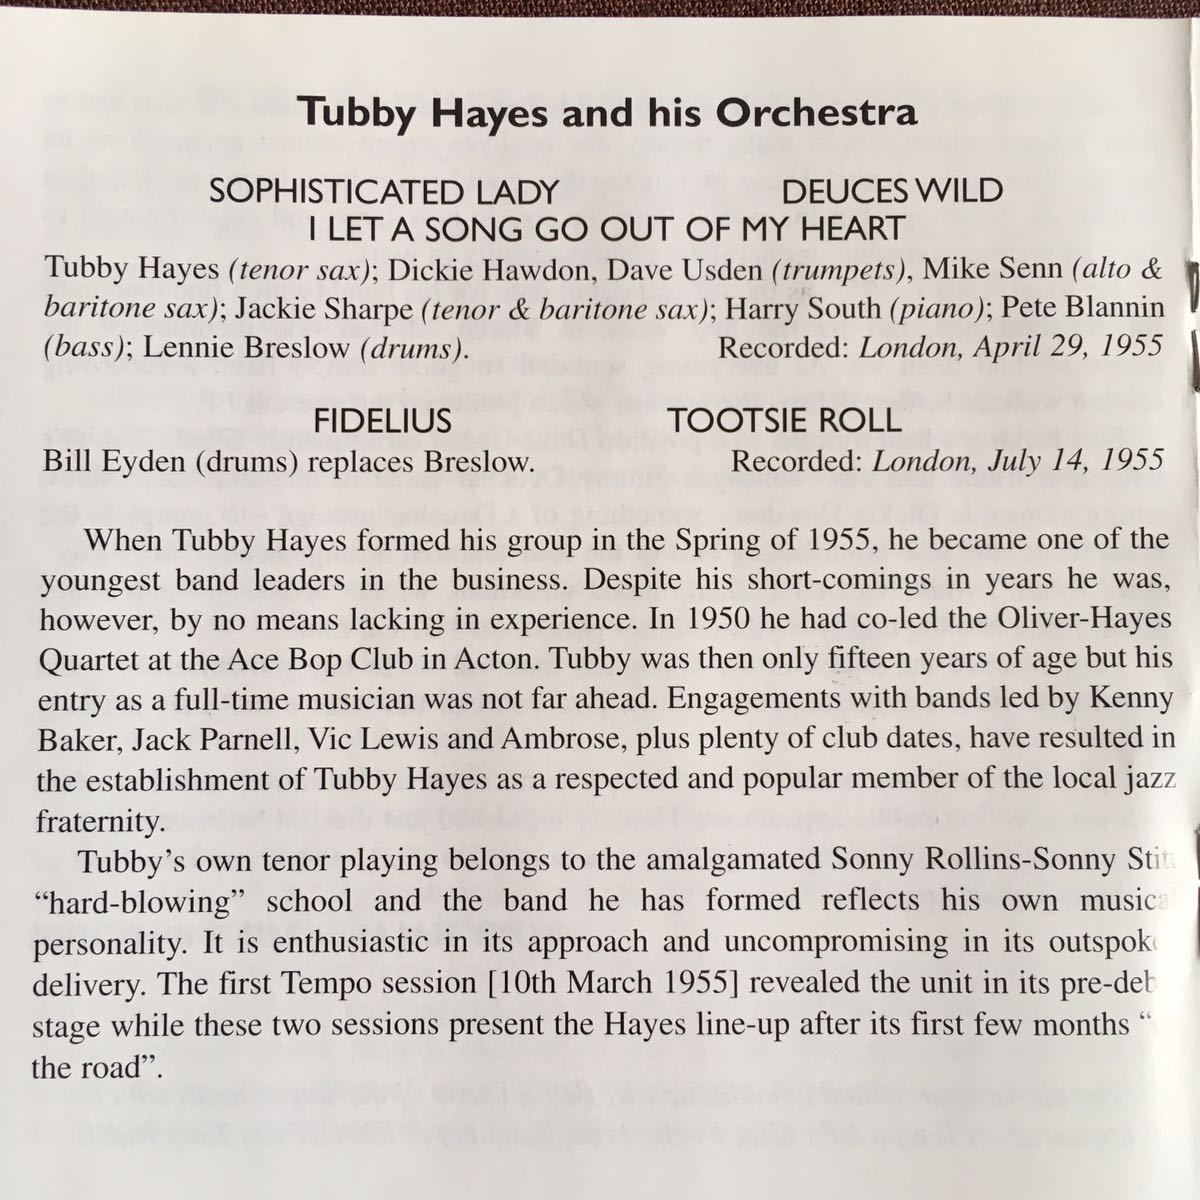 タビー・ヘイズ/TUBBY HAYES/英国ハード・バップ・テナー・サックス名手/ワンホーン・カルテット&ヒズ・オーケストラ/VOL.1/名盤/1955年_画像4